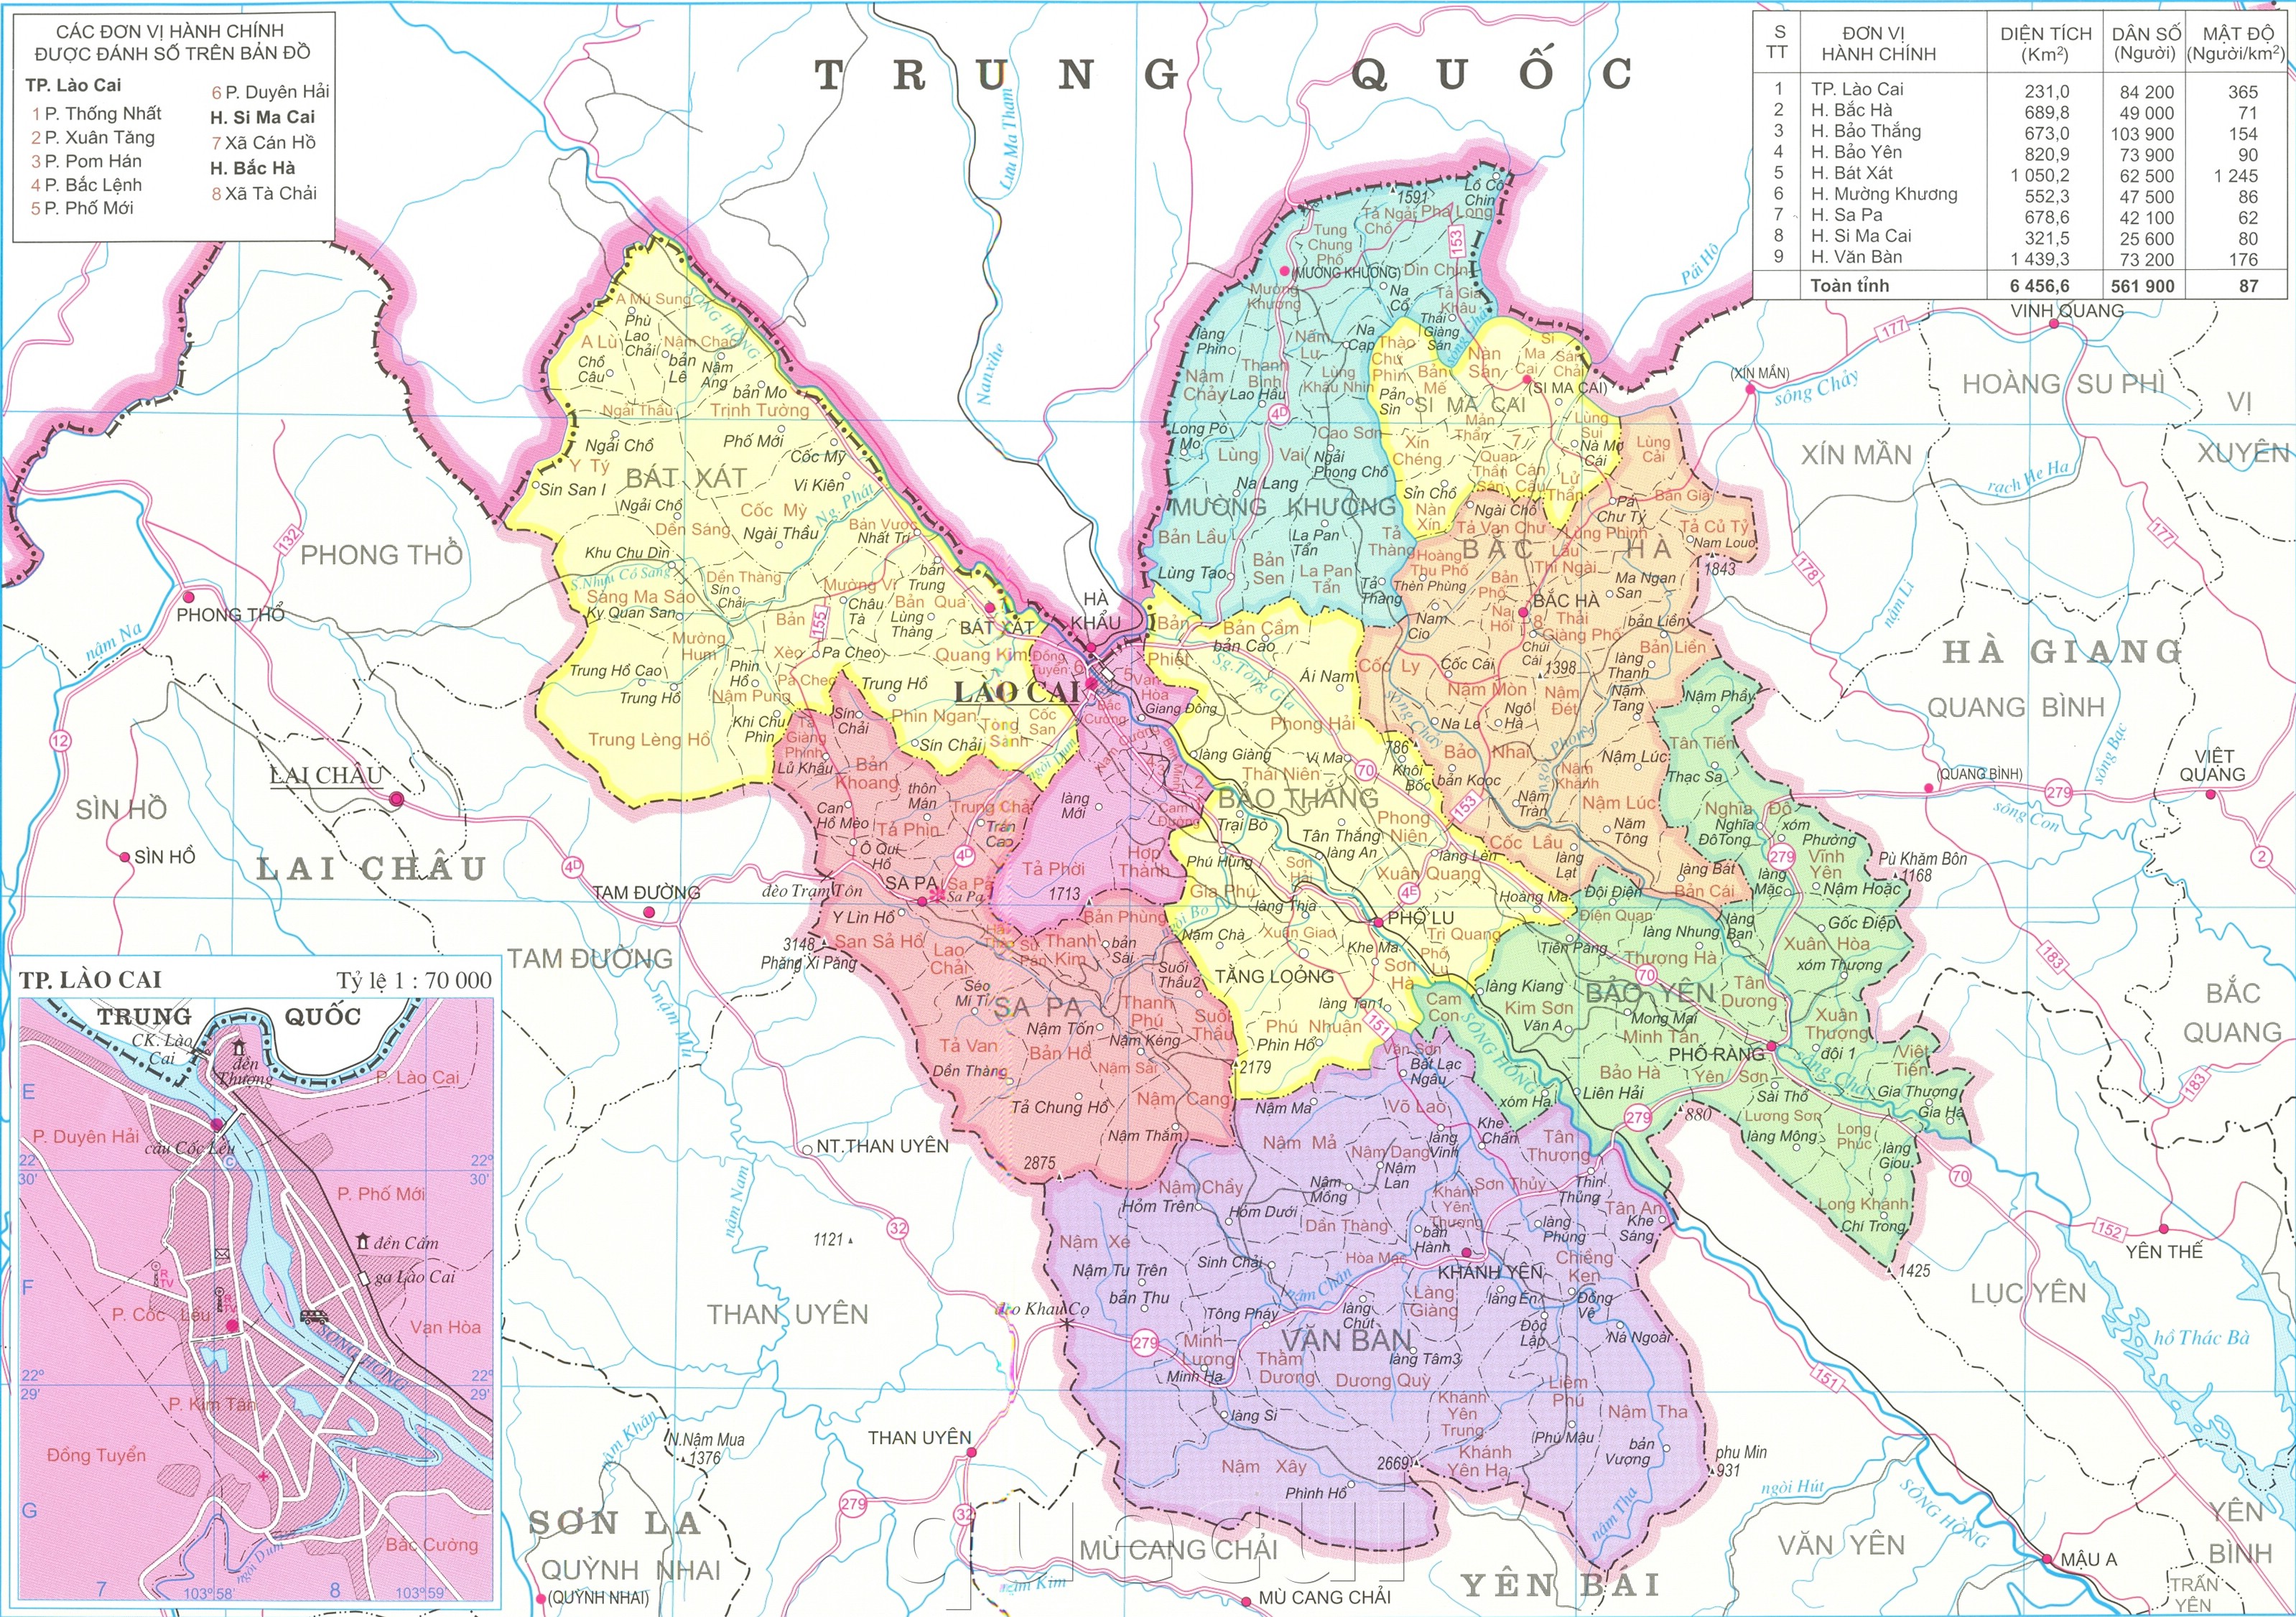 Quy hoạch Lào Cai 2024 trên bản đồ hành chính Sapa: Trên bản đồ hành chính mới của Sa Pa sẽ có sự kết hợp cập nhật các thông tin quy hoạch của Lào Cai vào năm